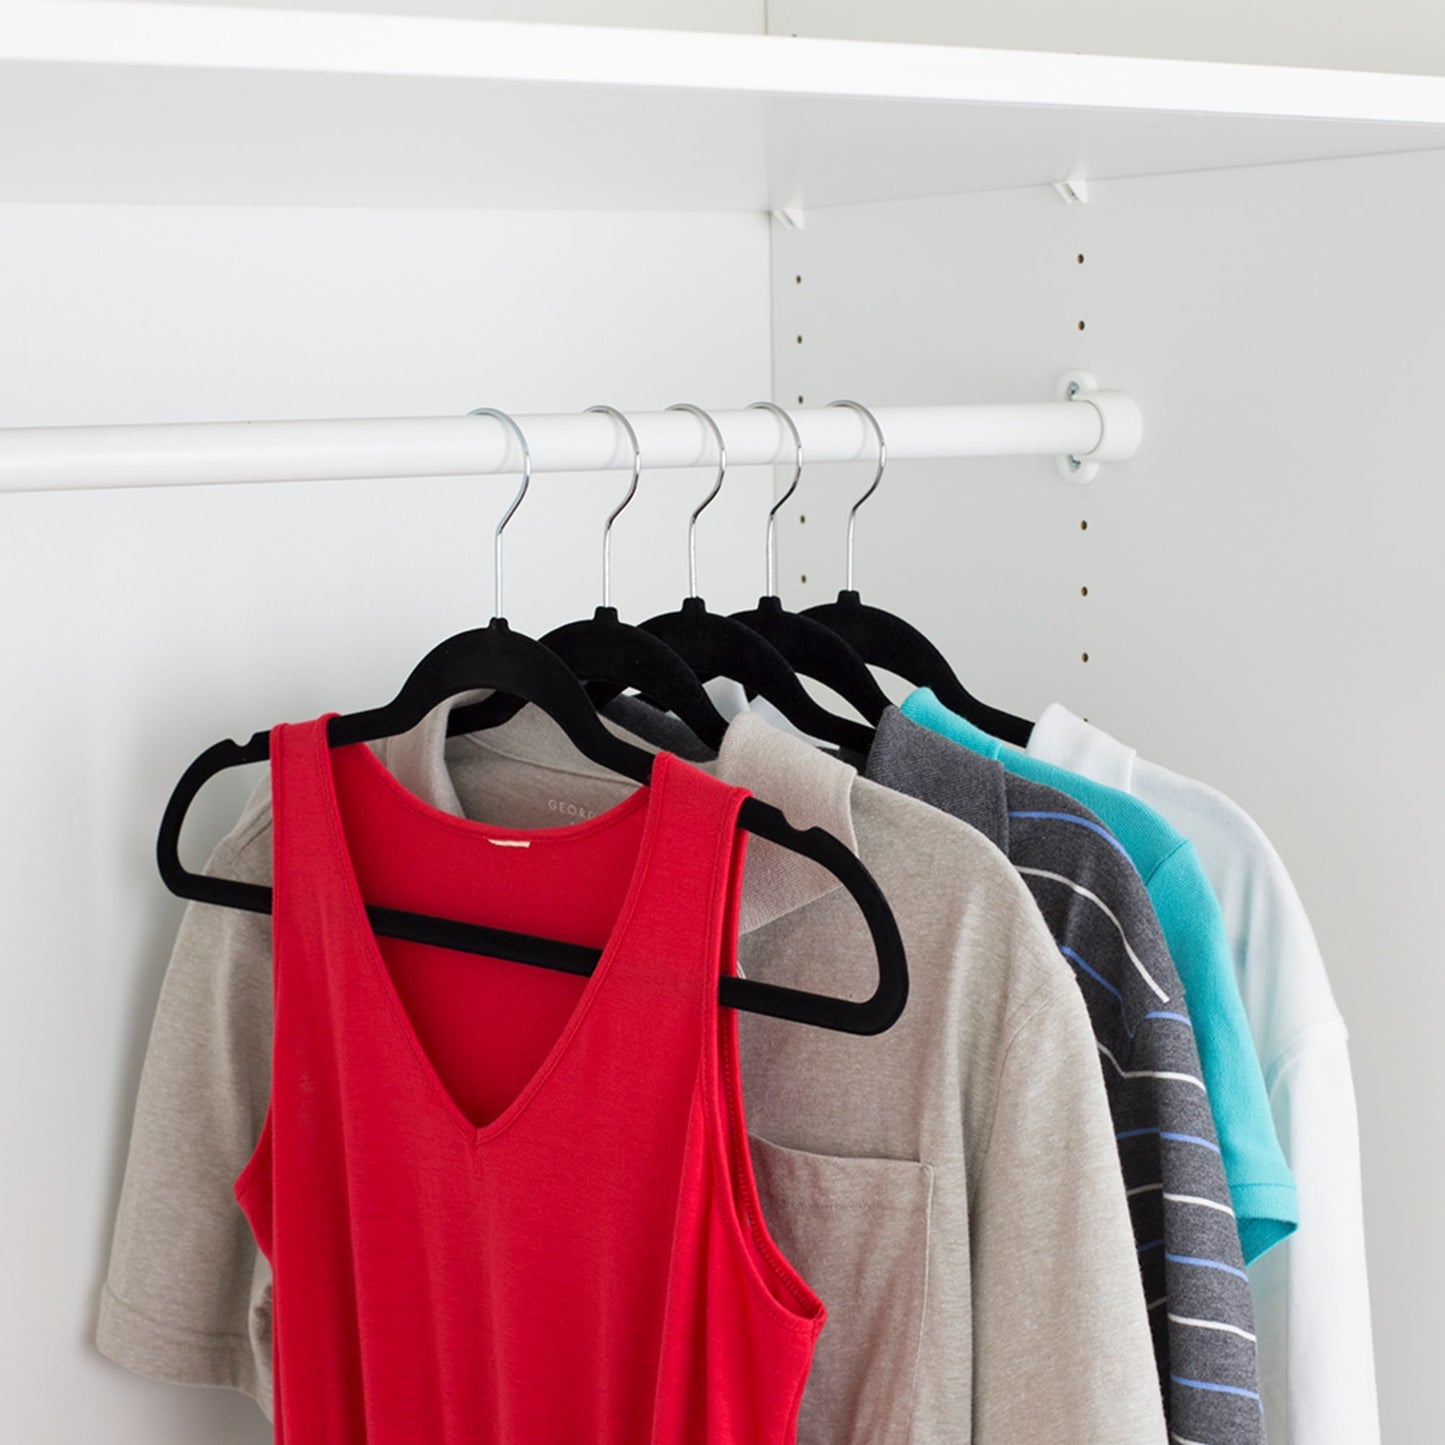 Home Basics 10-Piece Velvet Hangers, Grey, 1 Unit - Pay Less Super Markets